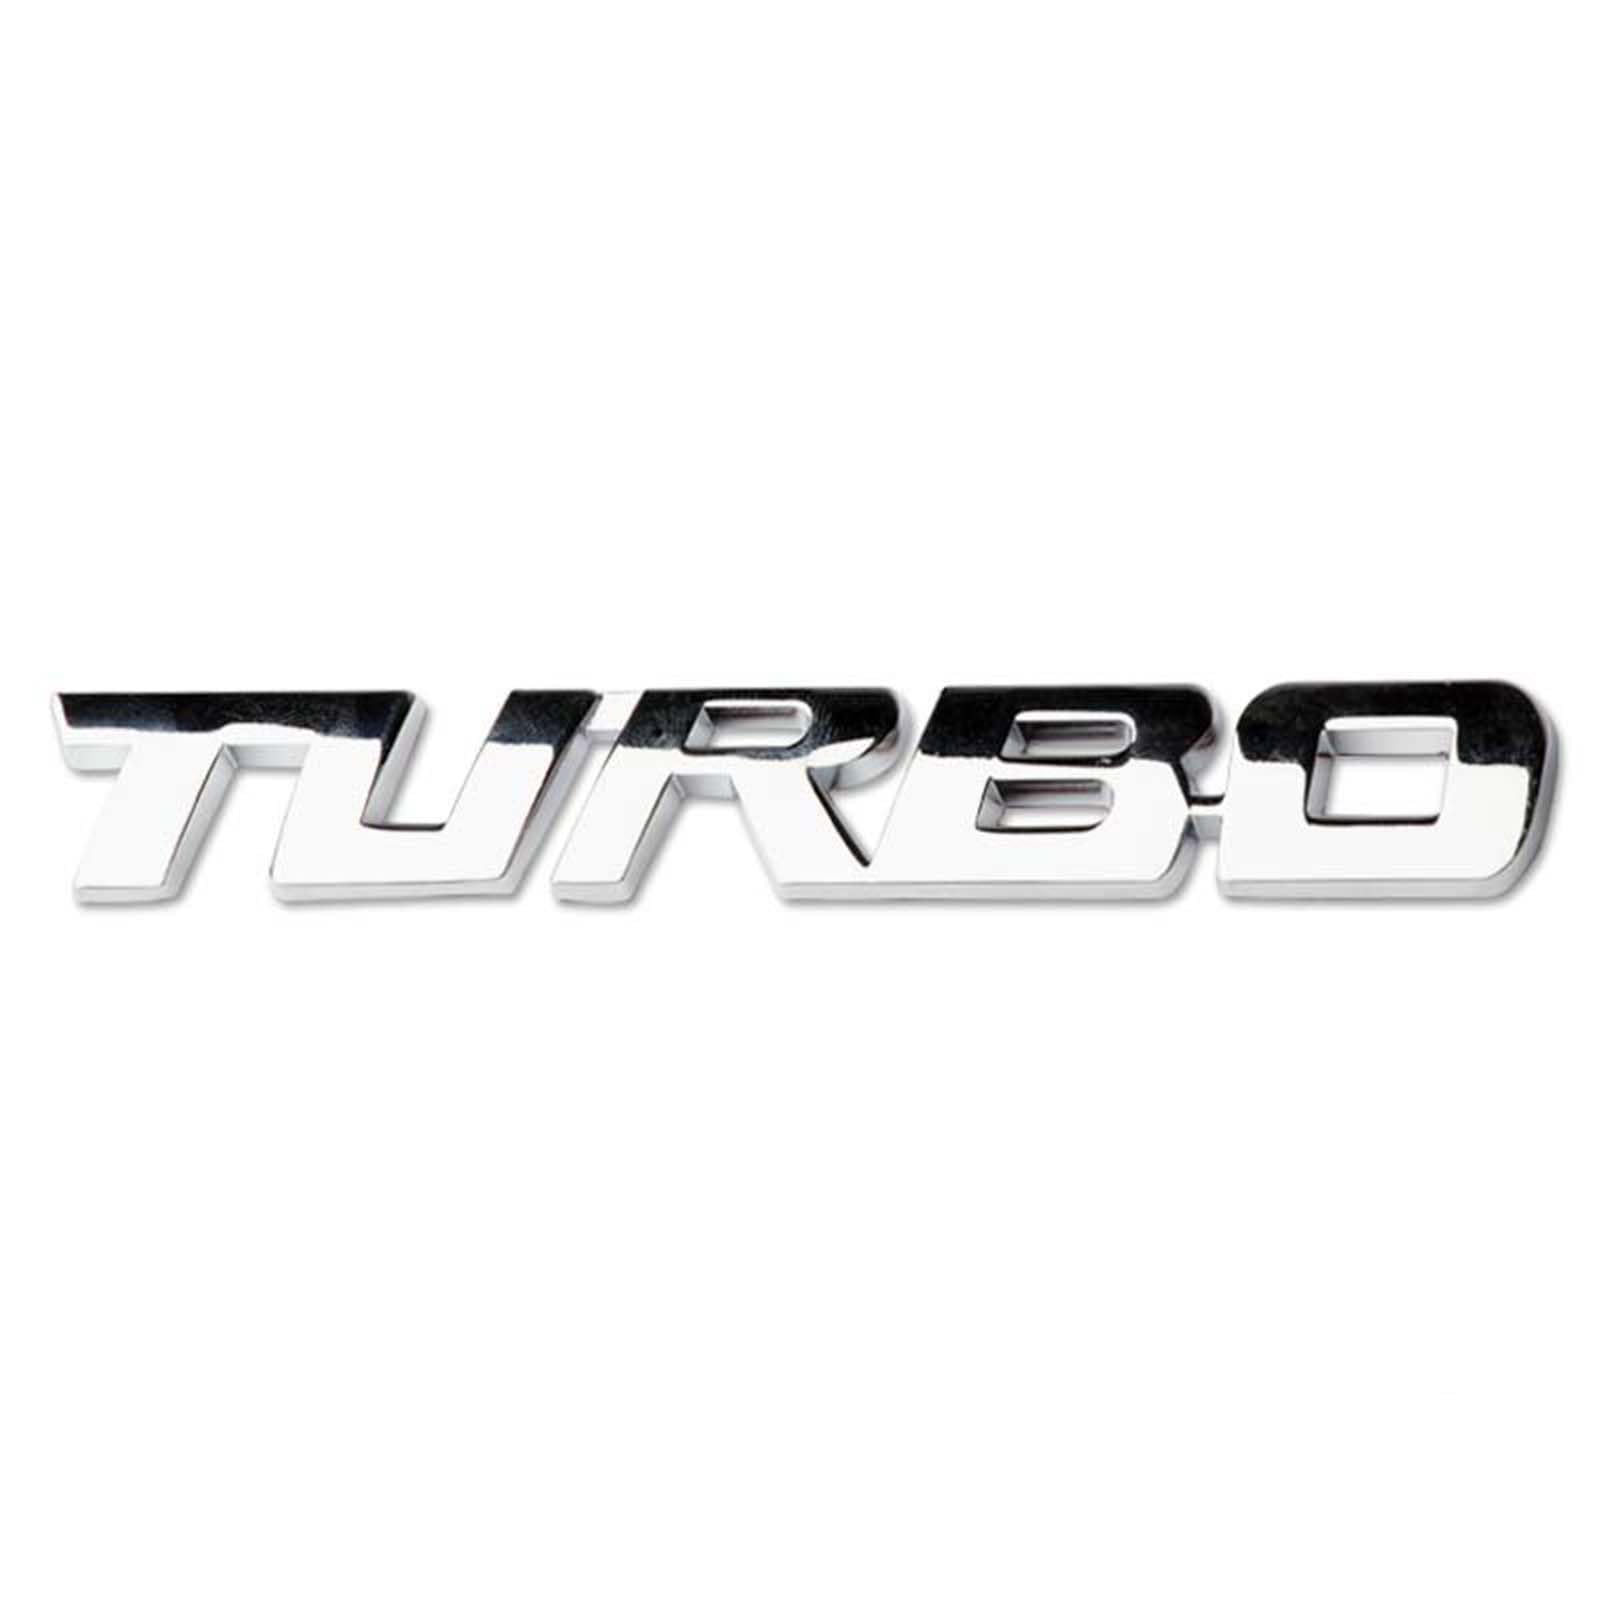 3D Metall Auto Aufkleber für Turbo, Selbstklebend Logo Emblem Badge Abzeichen für Heckklappe Kofferraum, Chrom Autoaufkleber zubehör,Silver von MOOWI